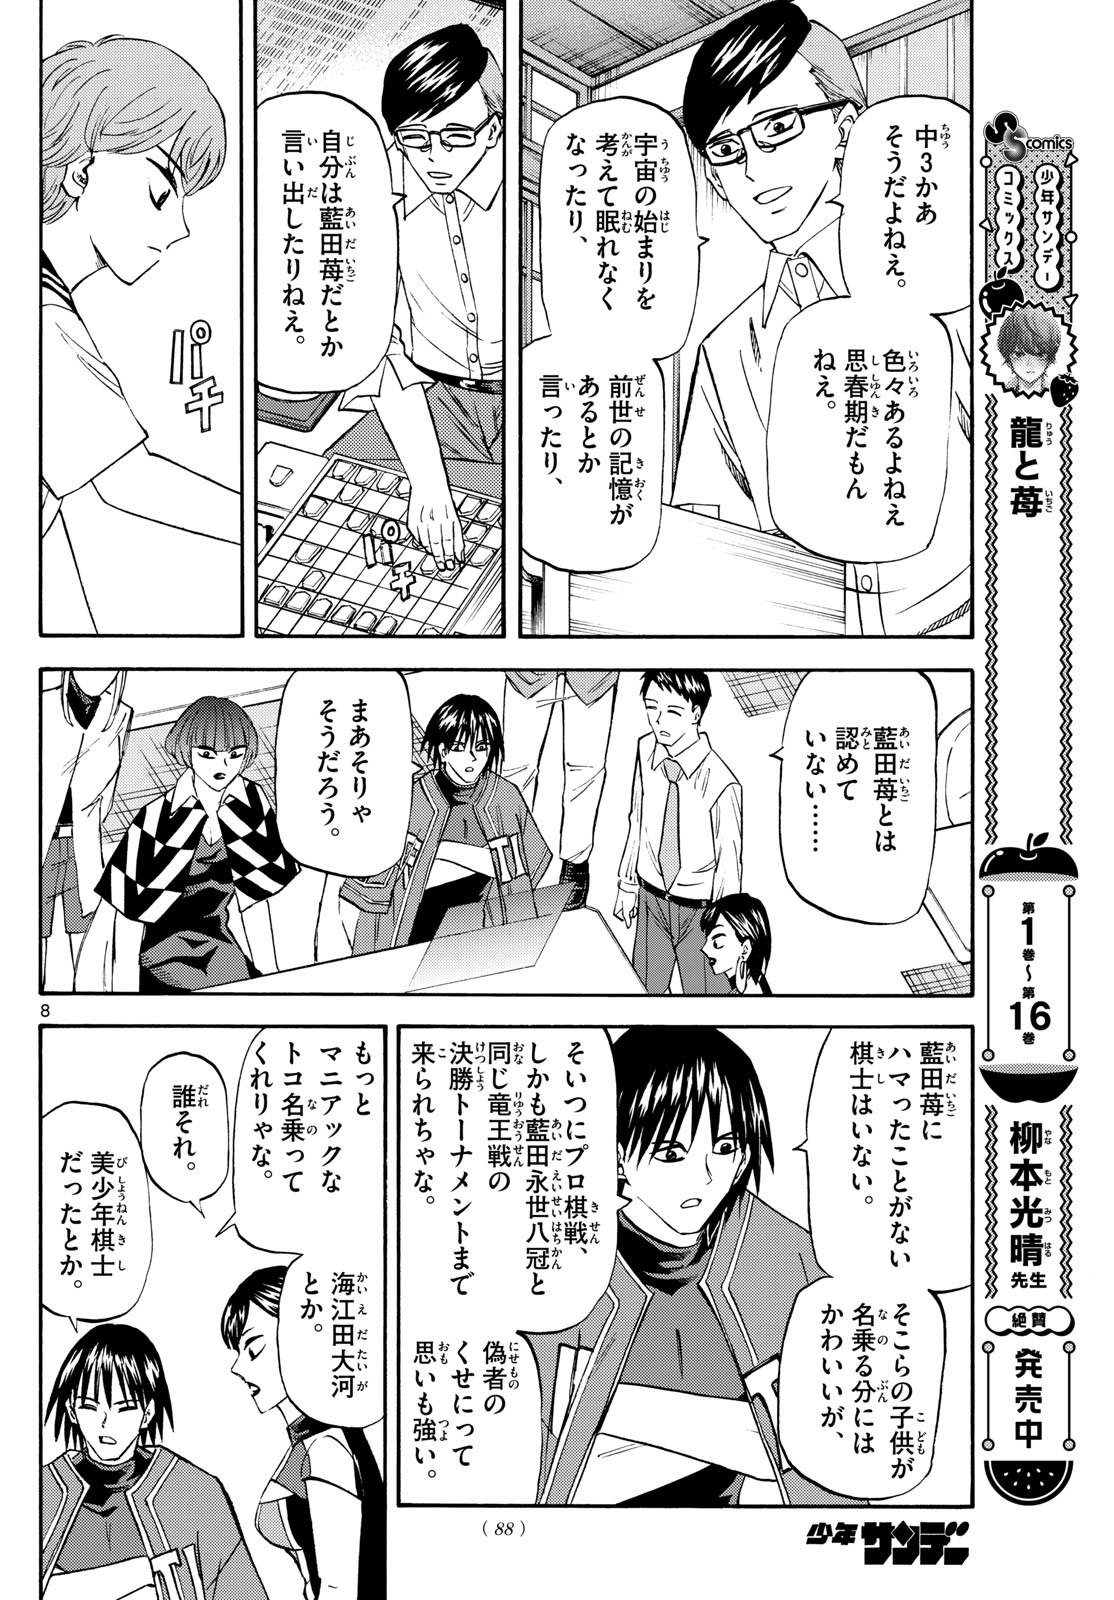 Ryu-to-Ichigo - Chapter 196 - Page 8